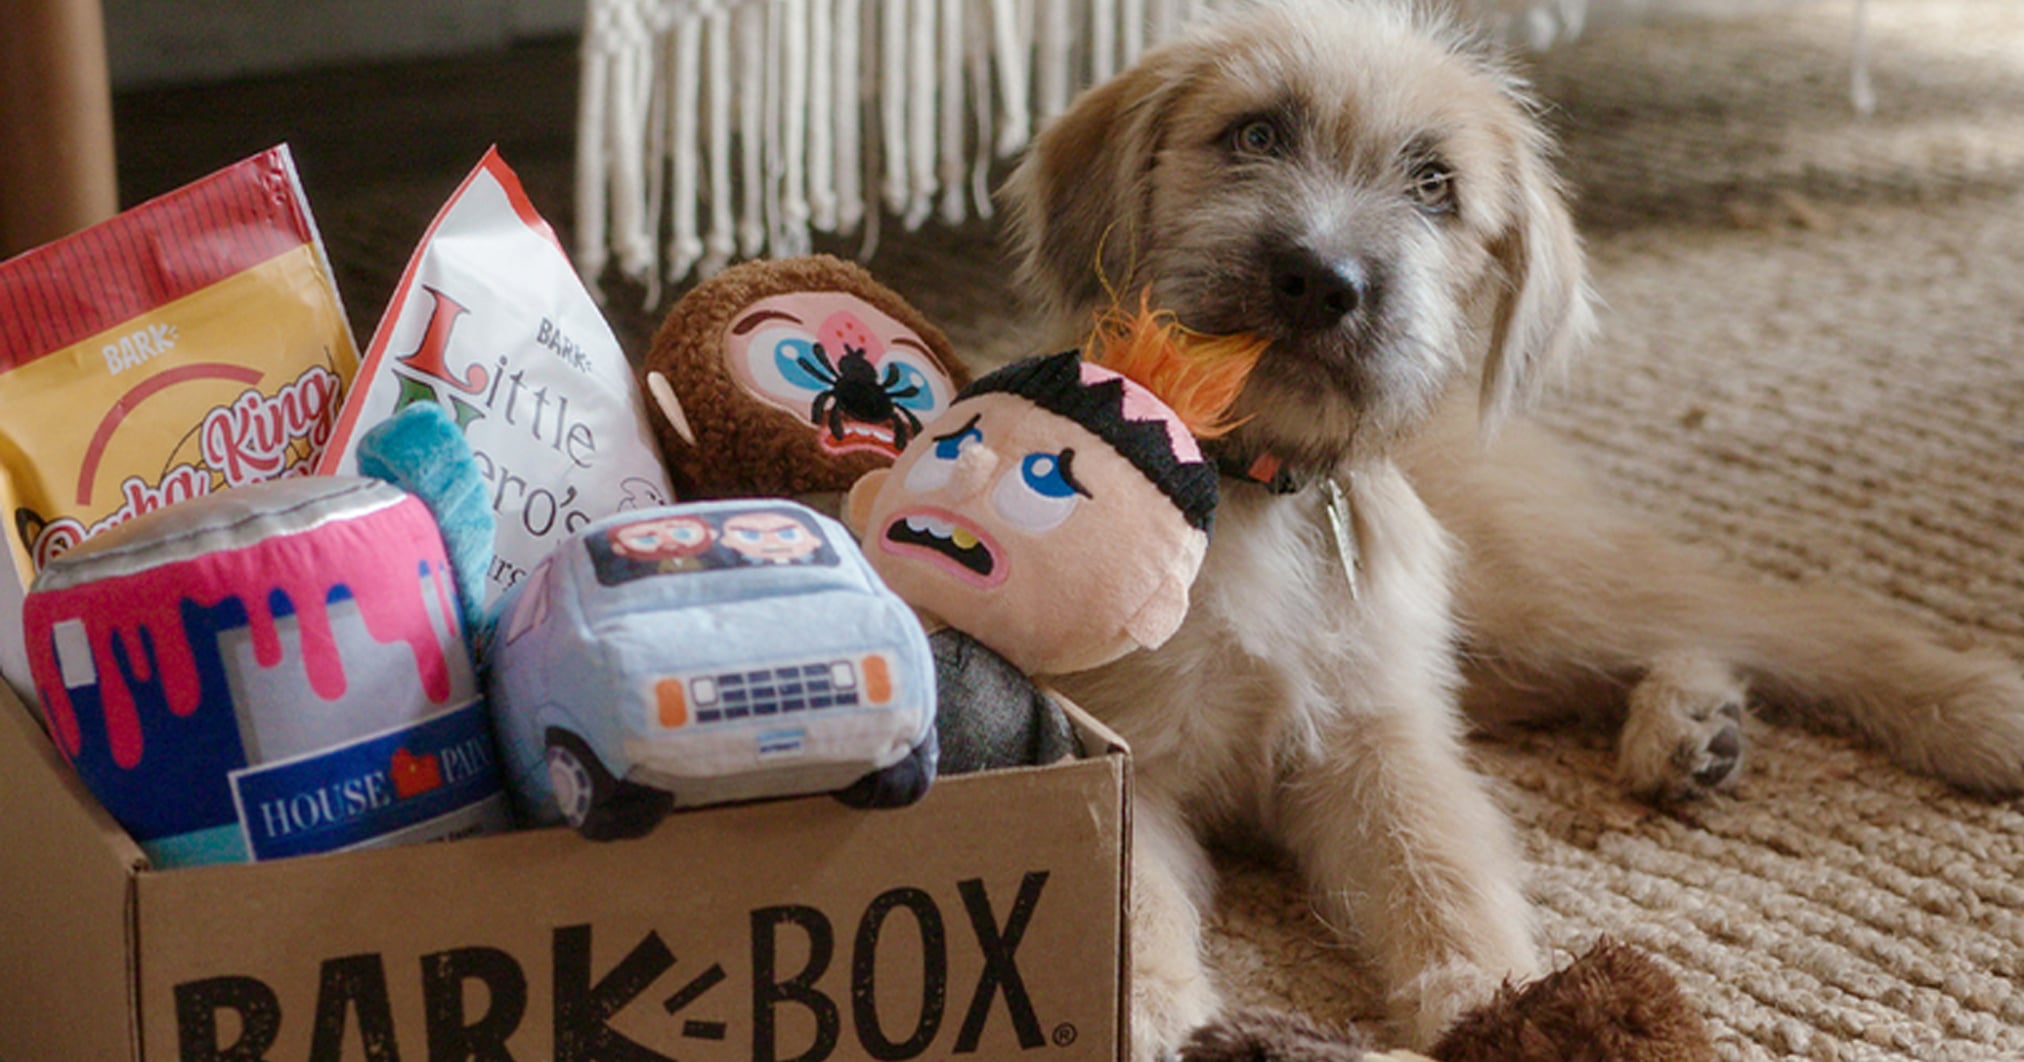 GOODY BOX Halloween Dog Toys & Treats, Small/Medium 